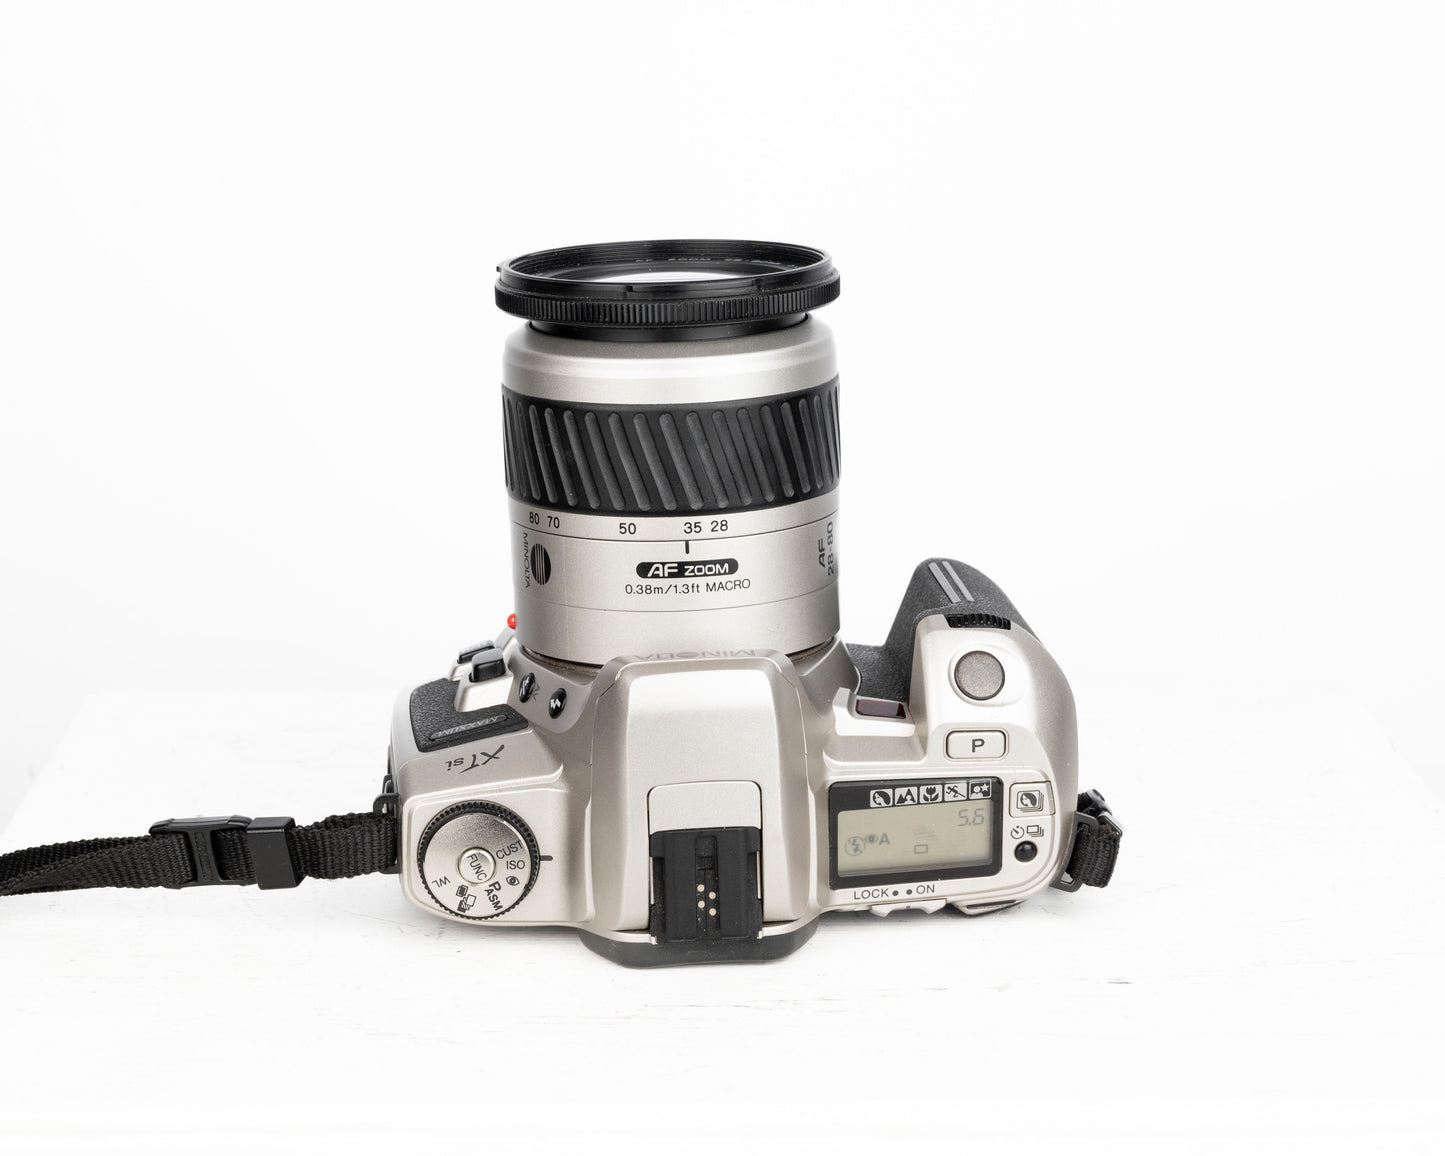 Minolta Maxxum XTsi 35mm film SLR w/ 28-80mm lens + Minolta camera bag + remote control (serial 94009570)